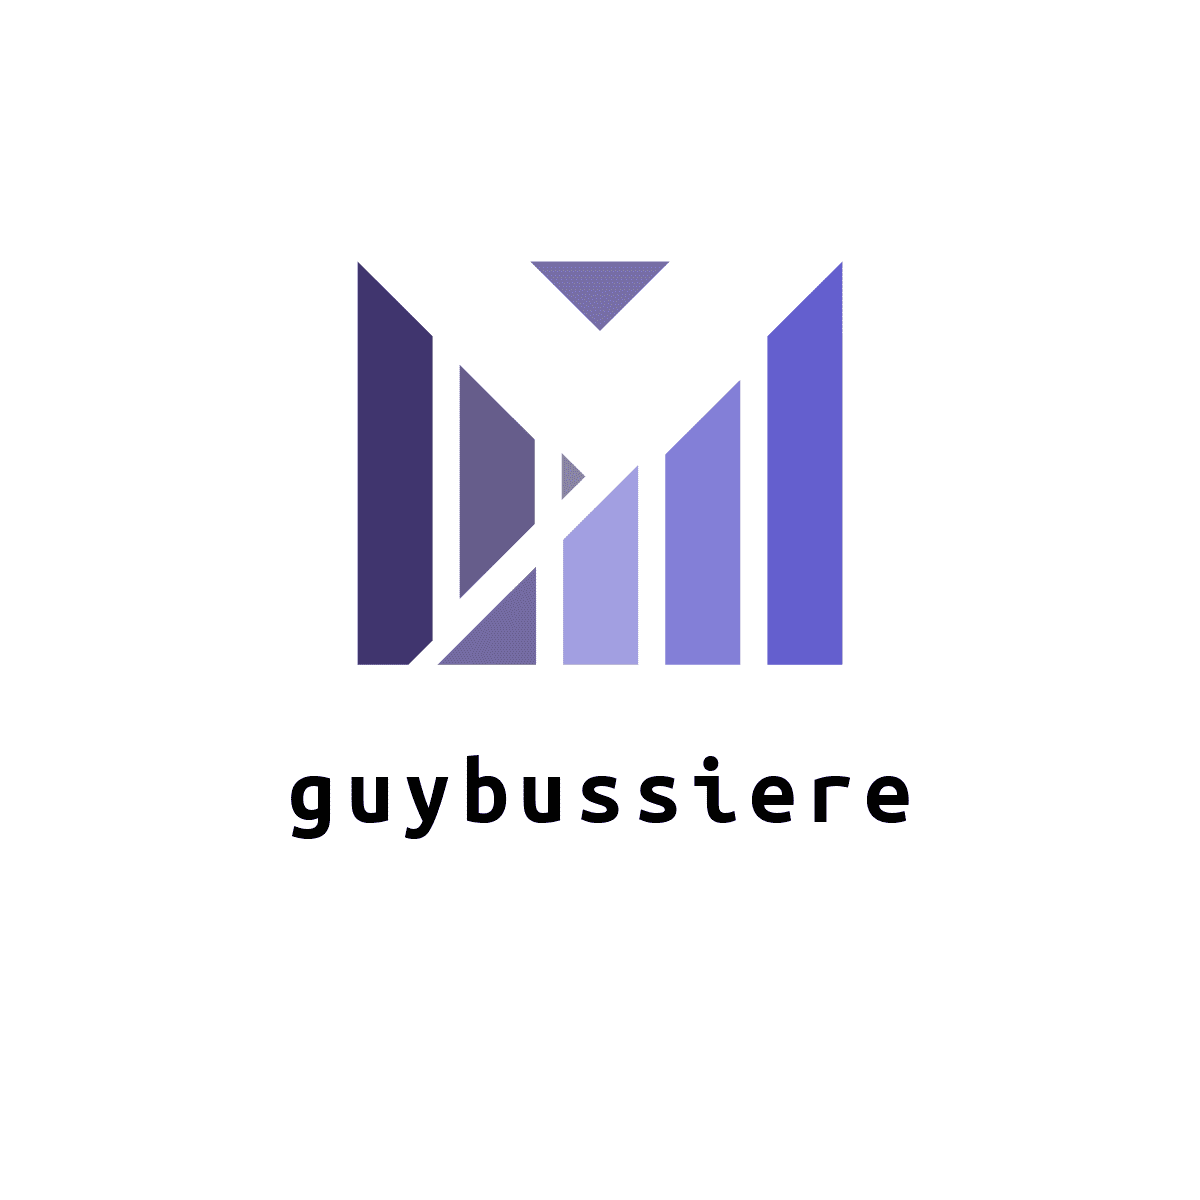 Guy-bussiere